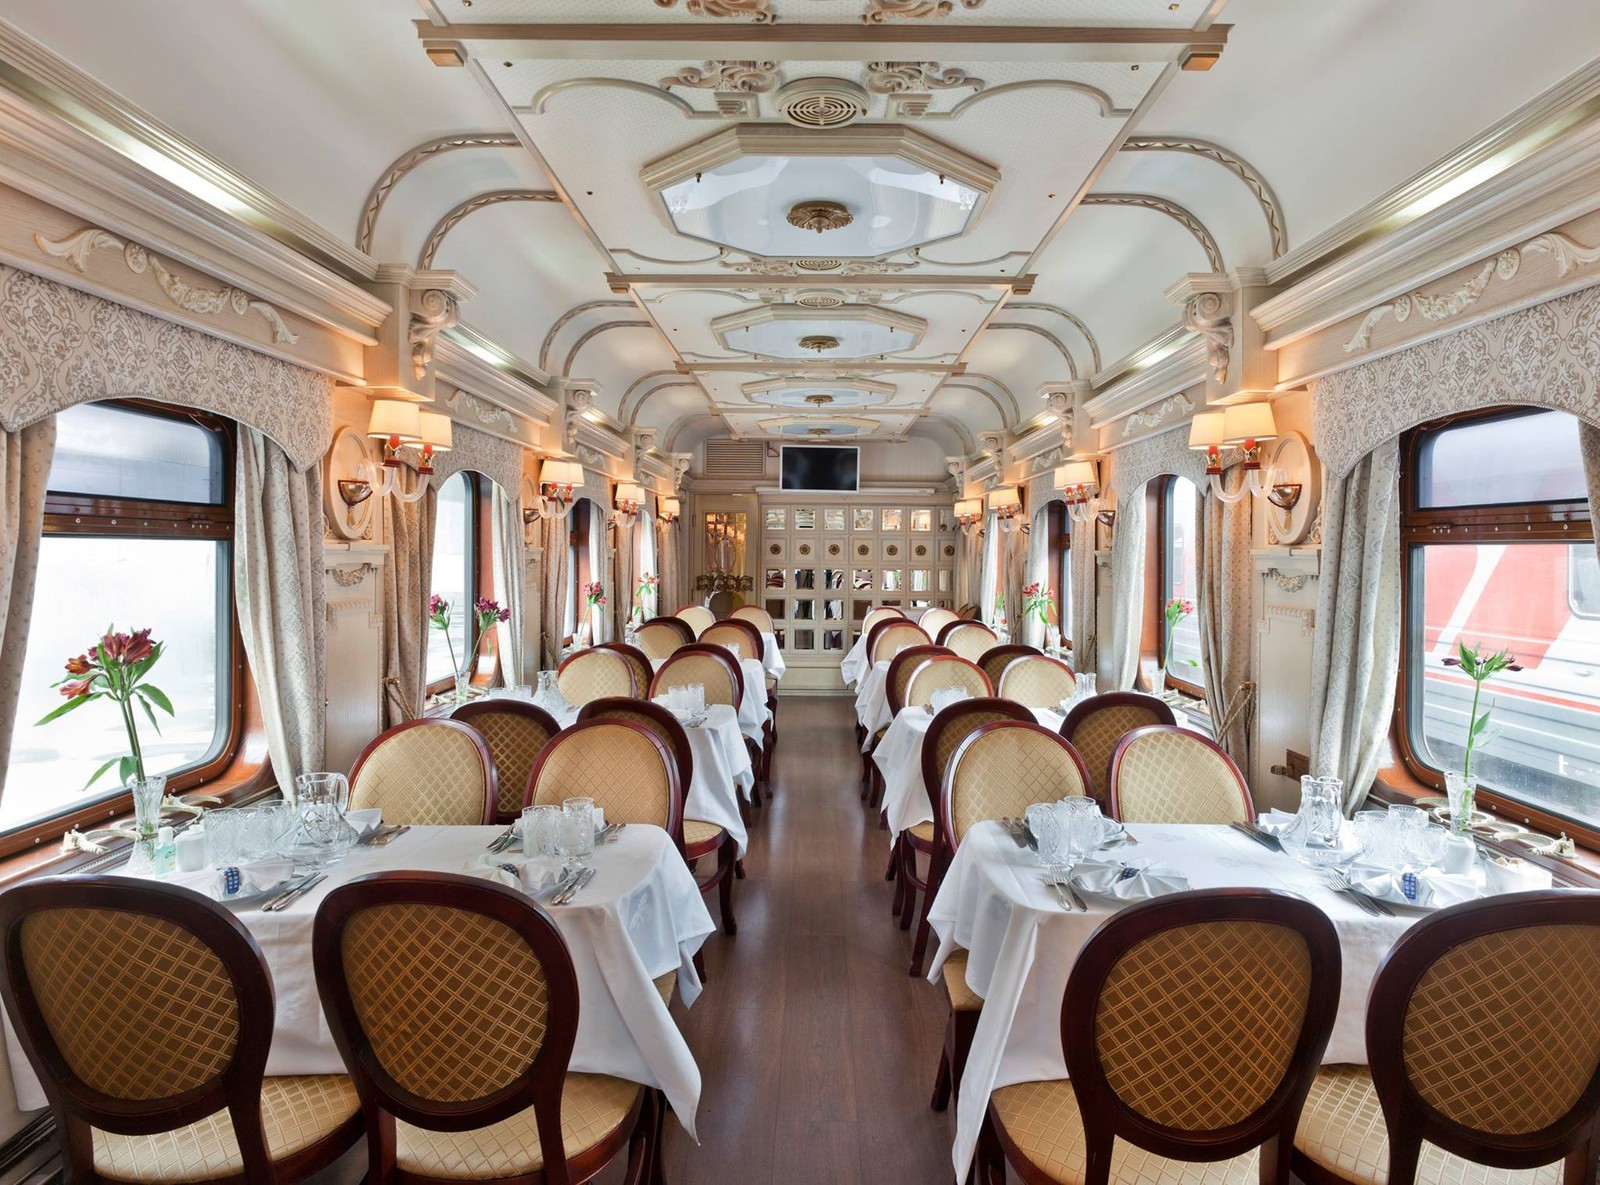 Considerado um dos melhores trens de luxo do mundo, o Golden Eagle foi inaugurado em 2007 para ser a melhor escolha para percorrer a rota transiberiana entre Moscou e Vladivostok, na Rússia — Foto: Divulgação